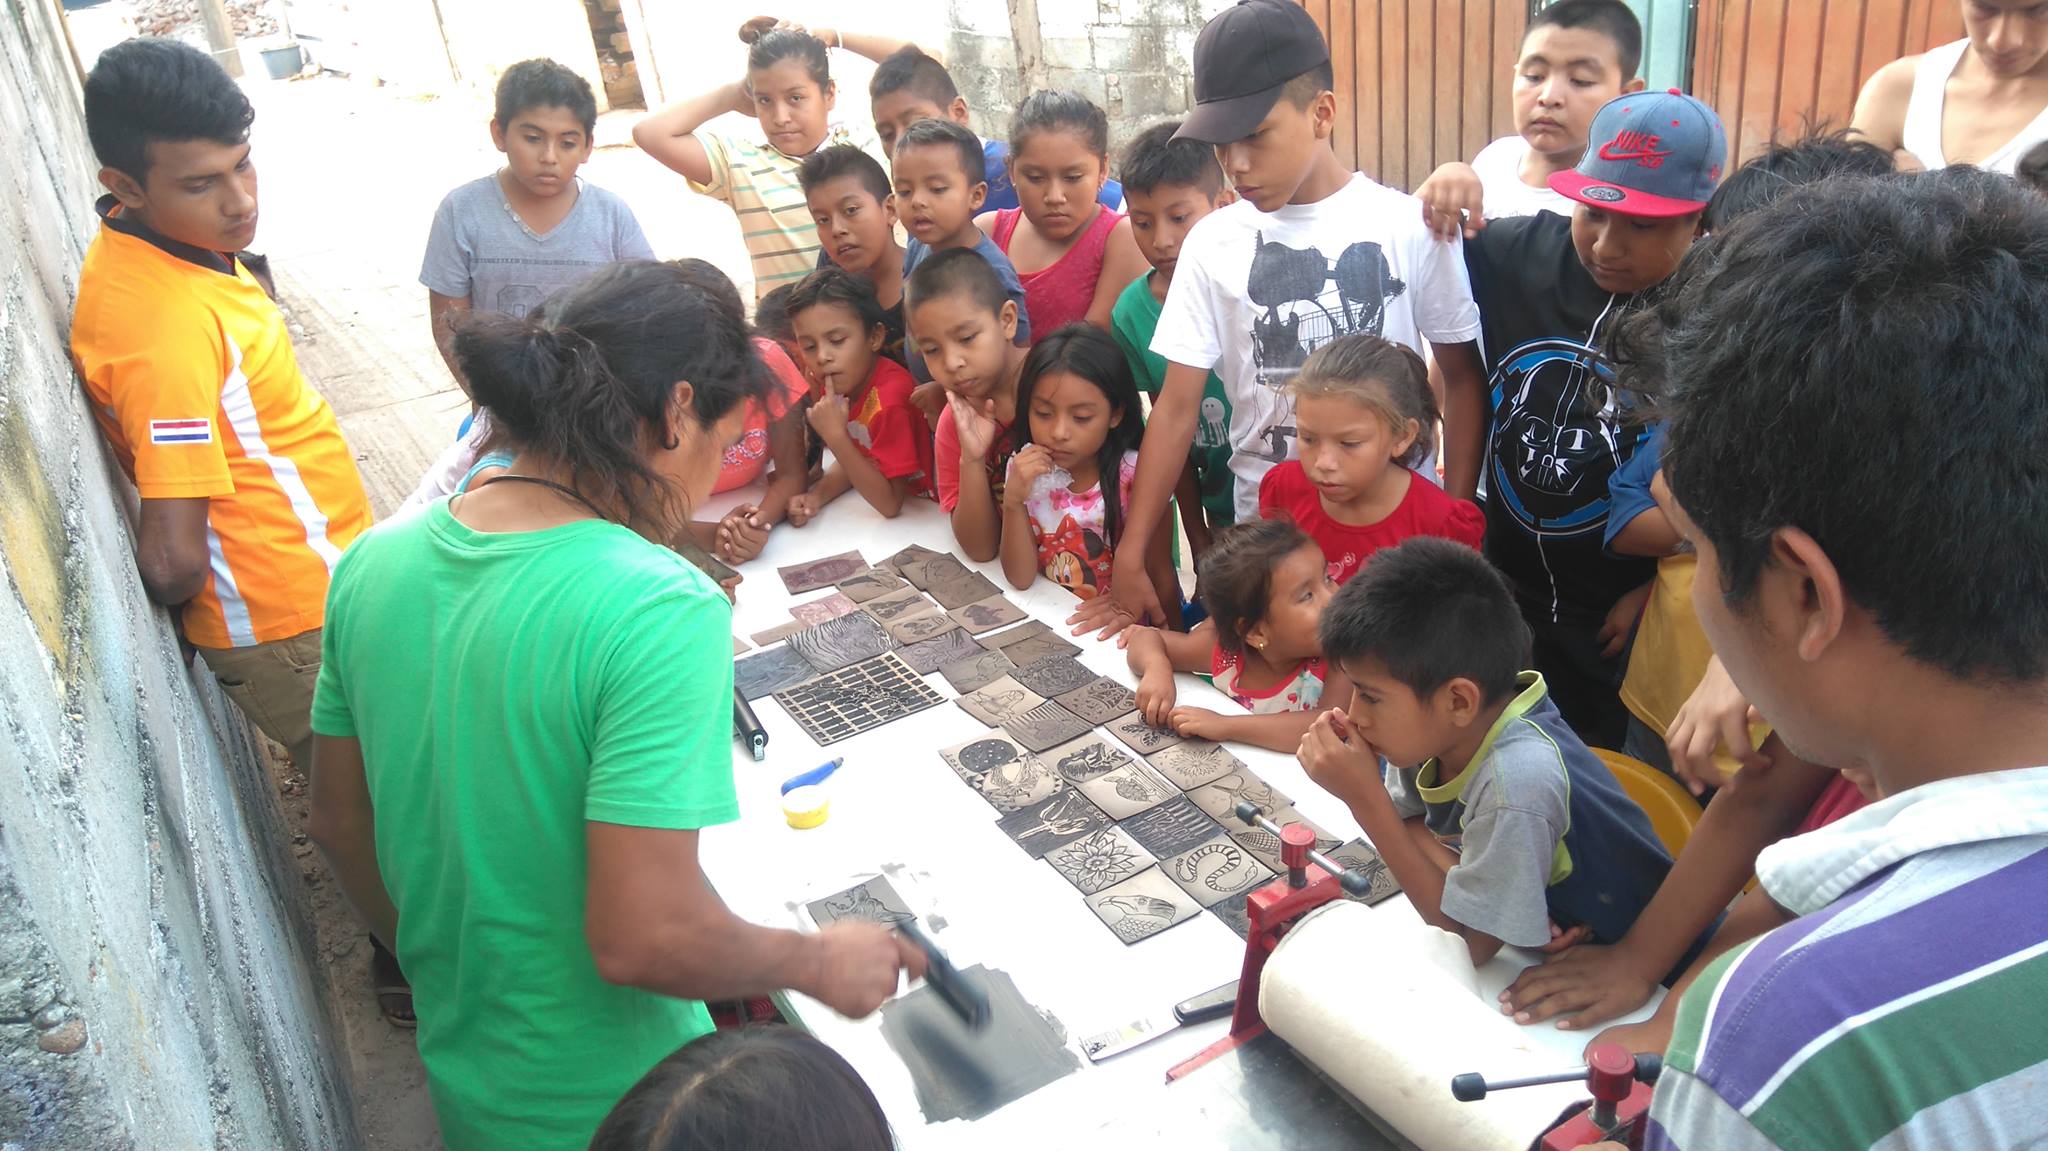 integrantes del Escuadrón Hormiguita tomando clases de arte